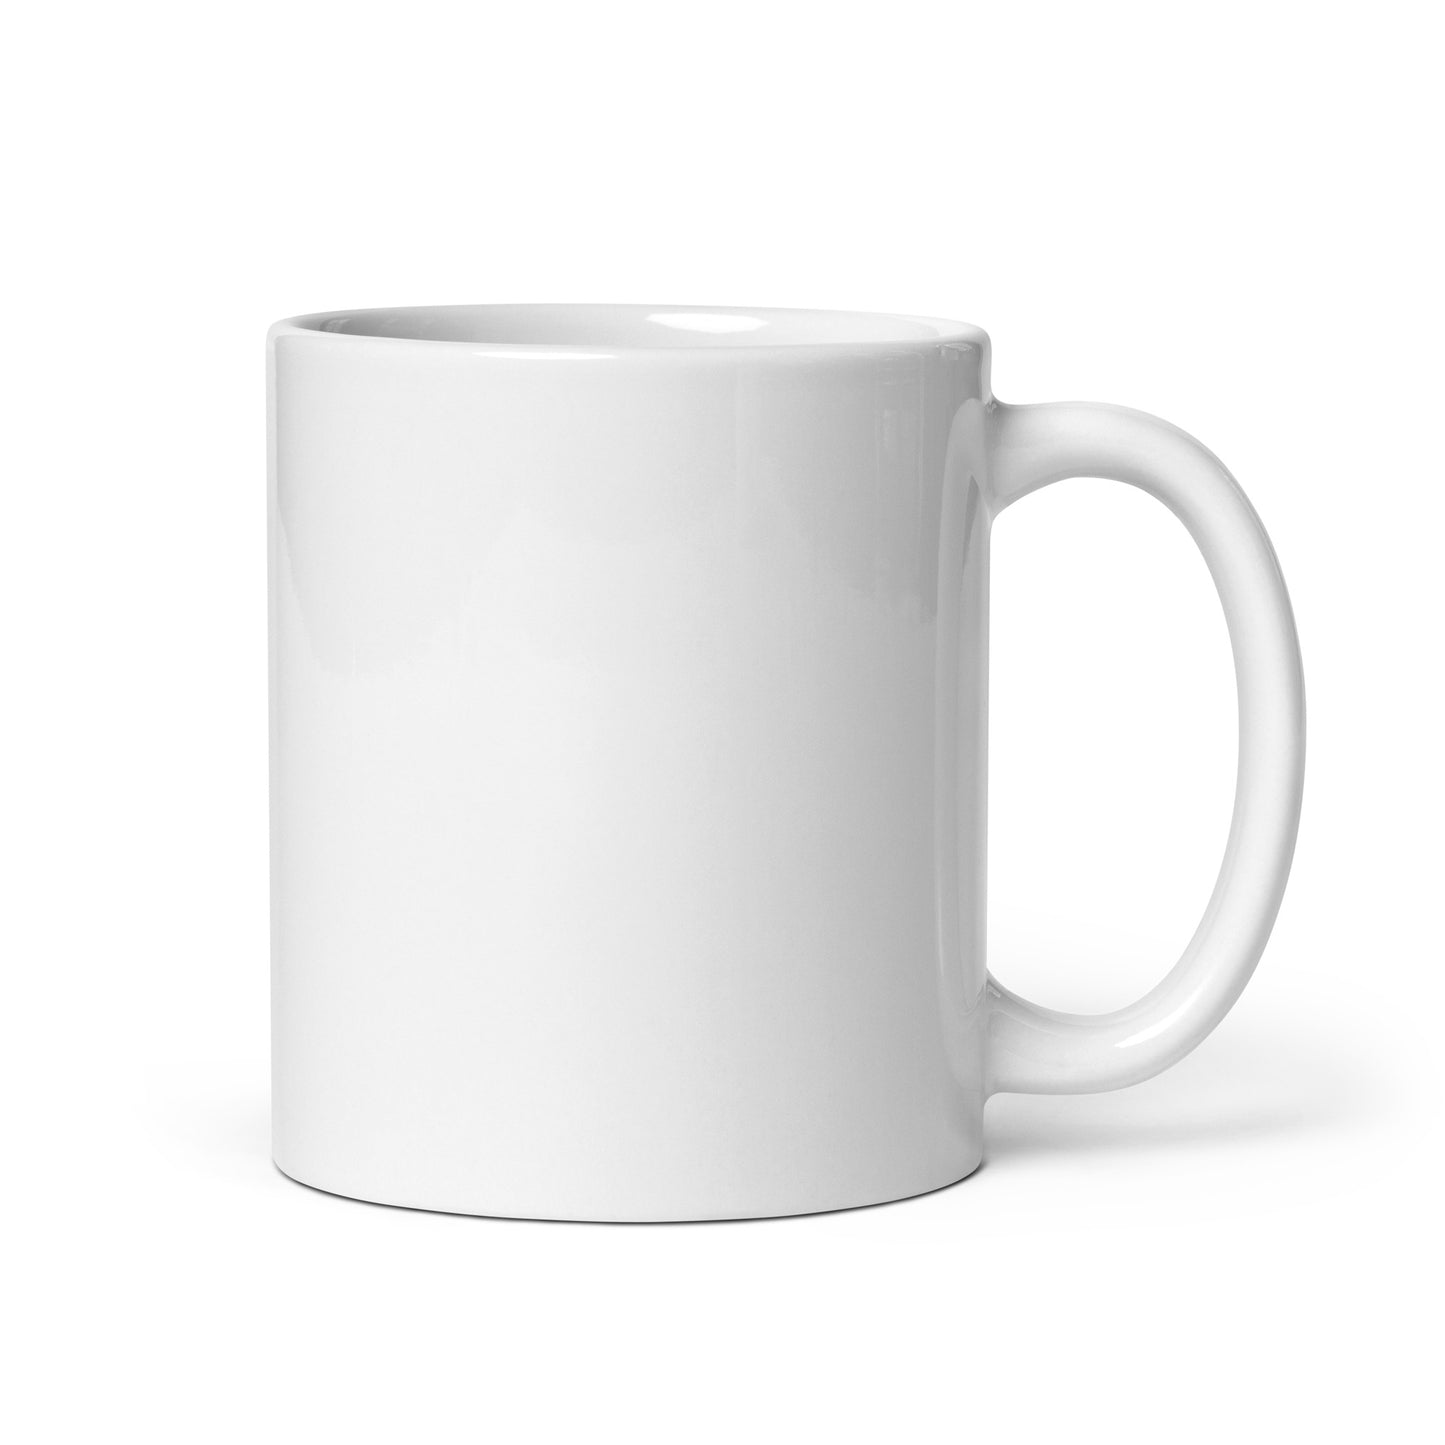 White glossy mug - Suncoast Hospice Resale Shop